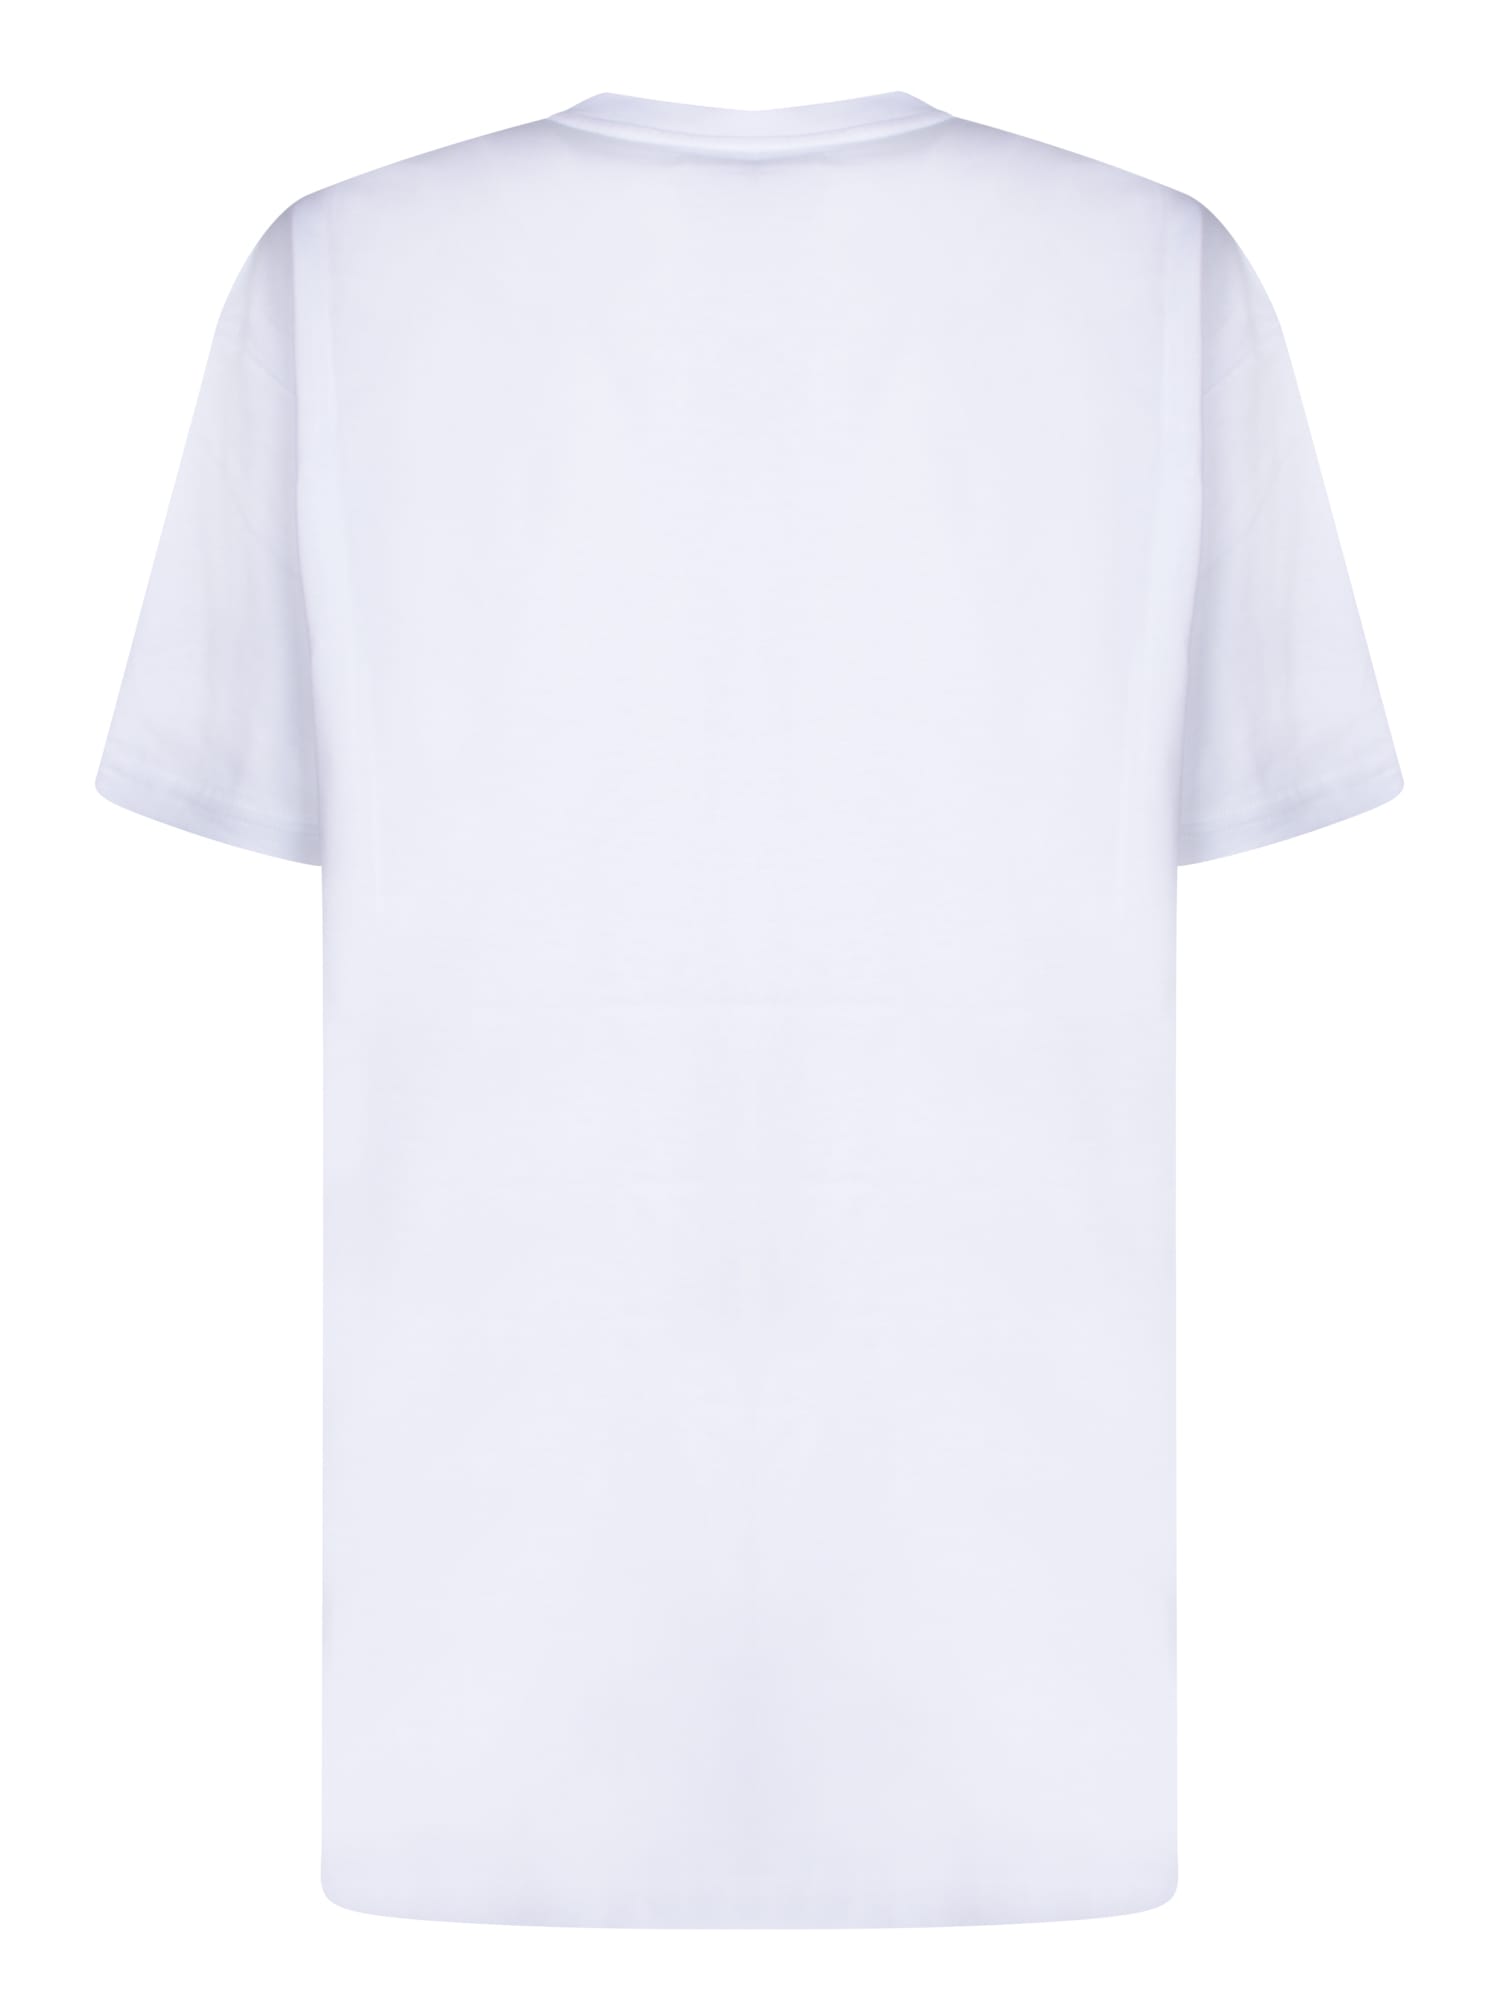 Shop Vivienne Westwood Summer Classic White T-shirt